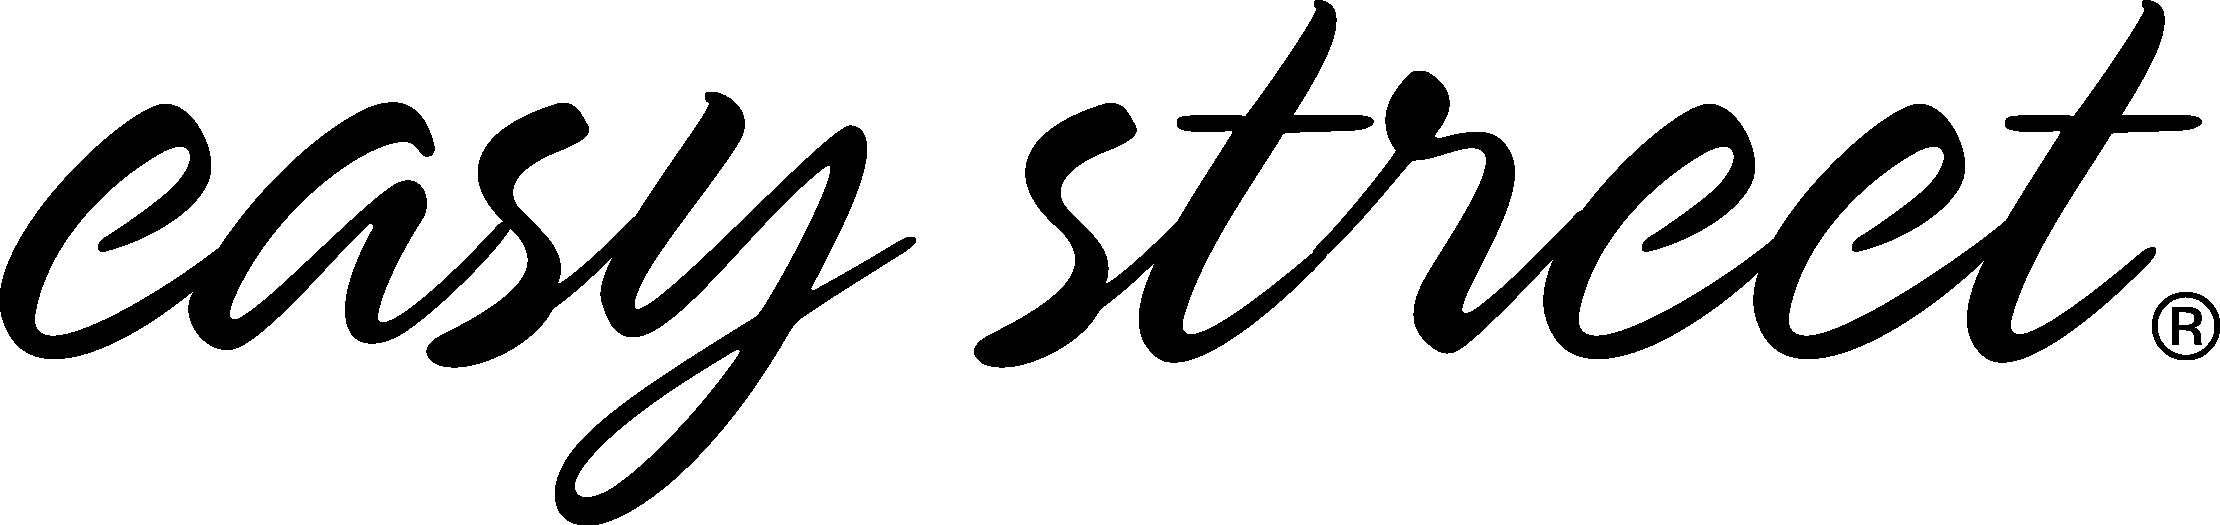 Easy Street Logo